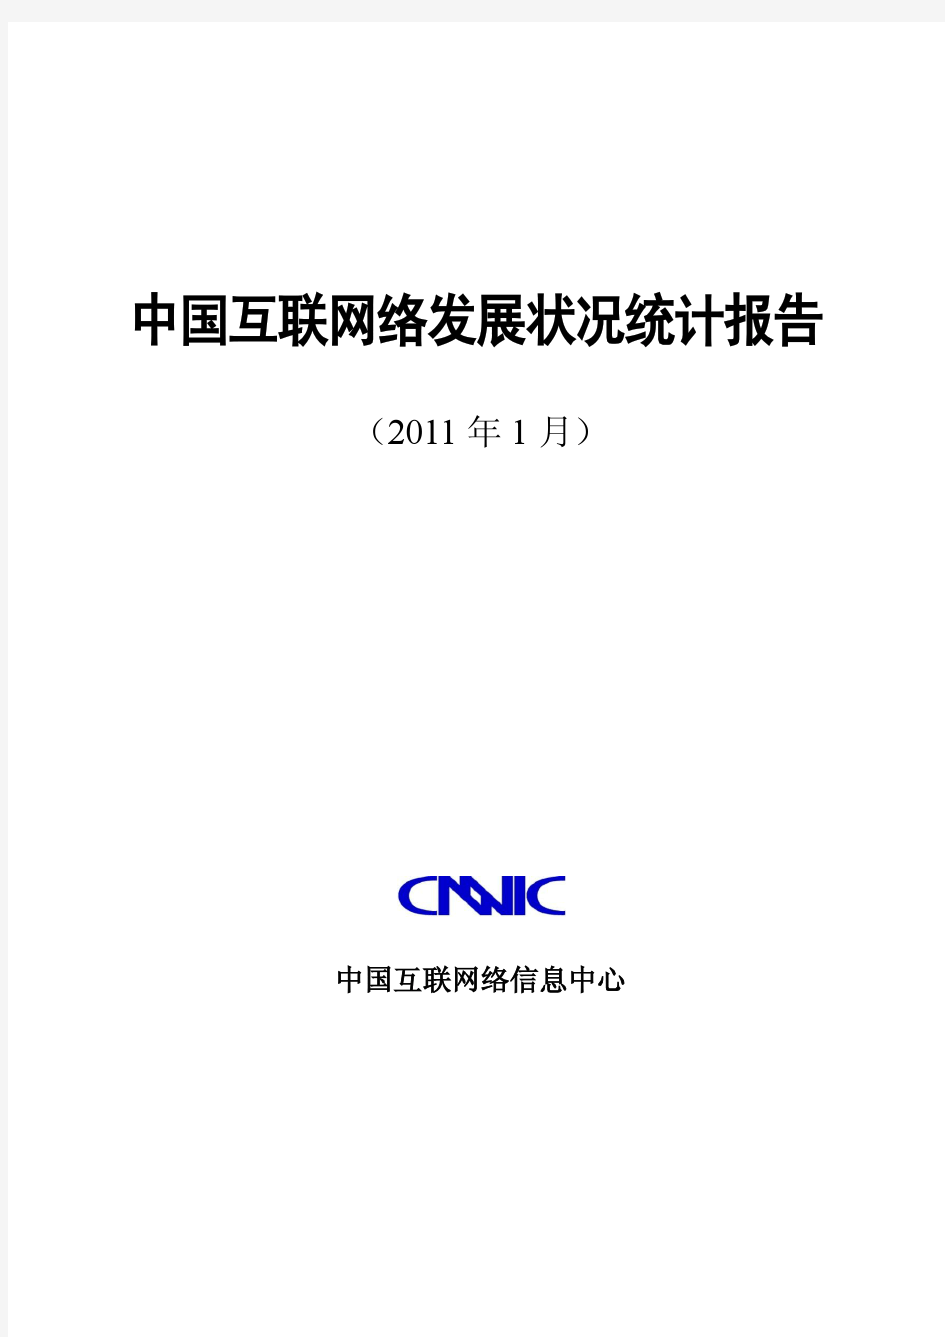 2010年中国互联网络发展状况统计报告